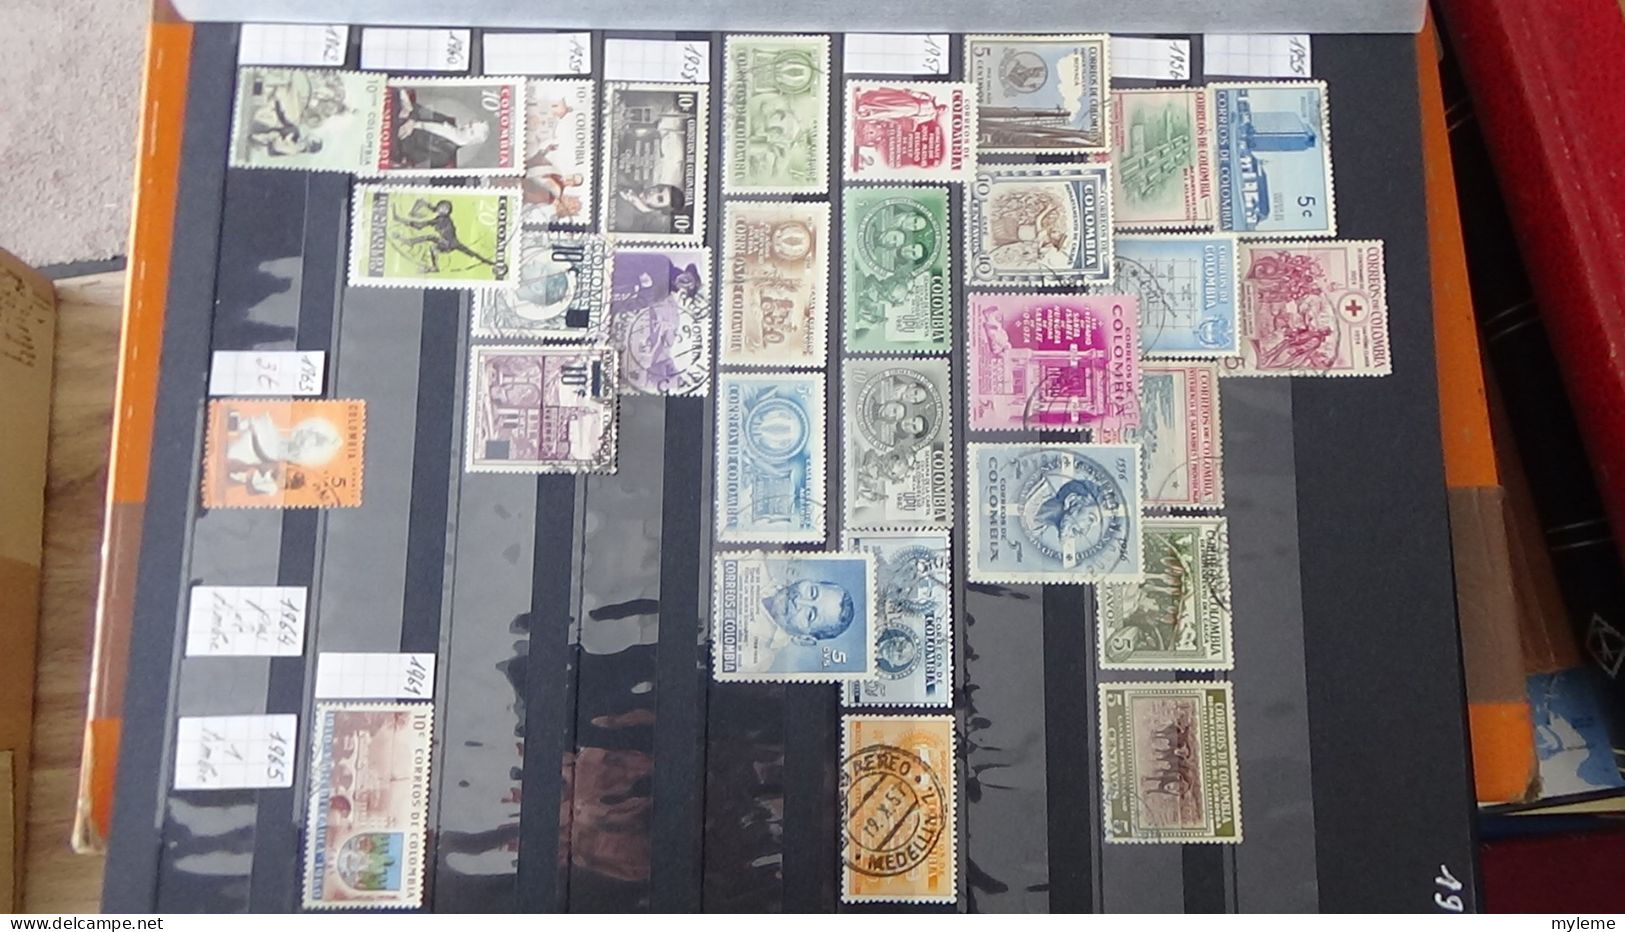 BF35 Ensemble de timbres de divers pays + France N° 252 + 256 **  Cote 420 euros